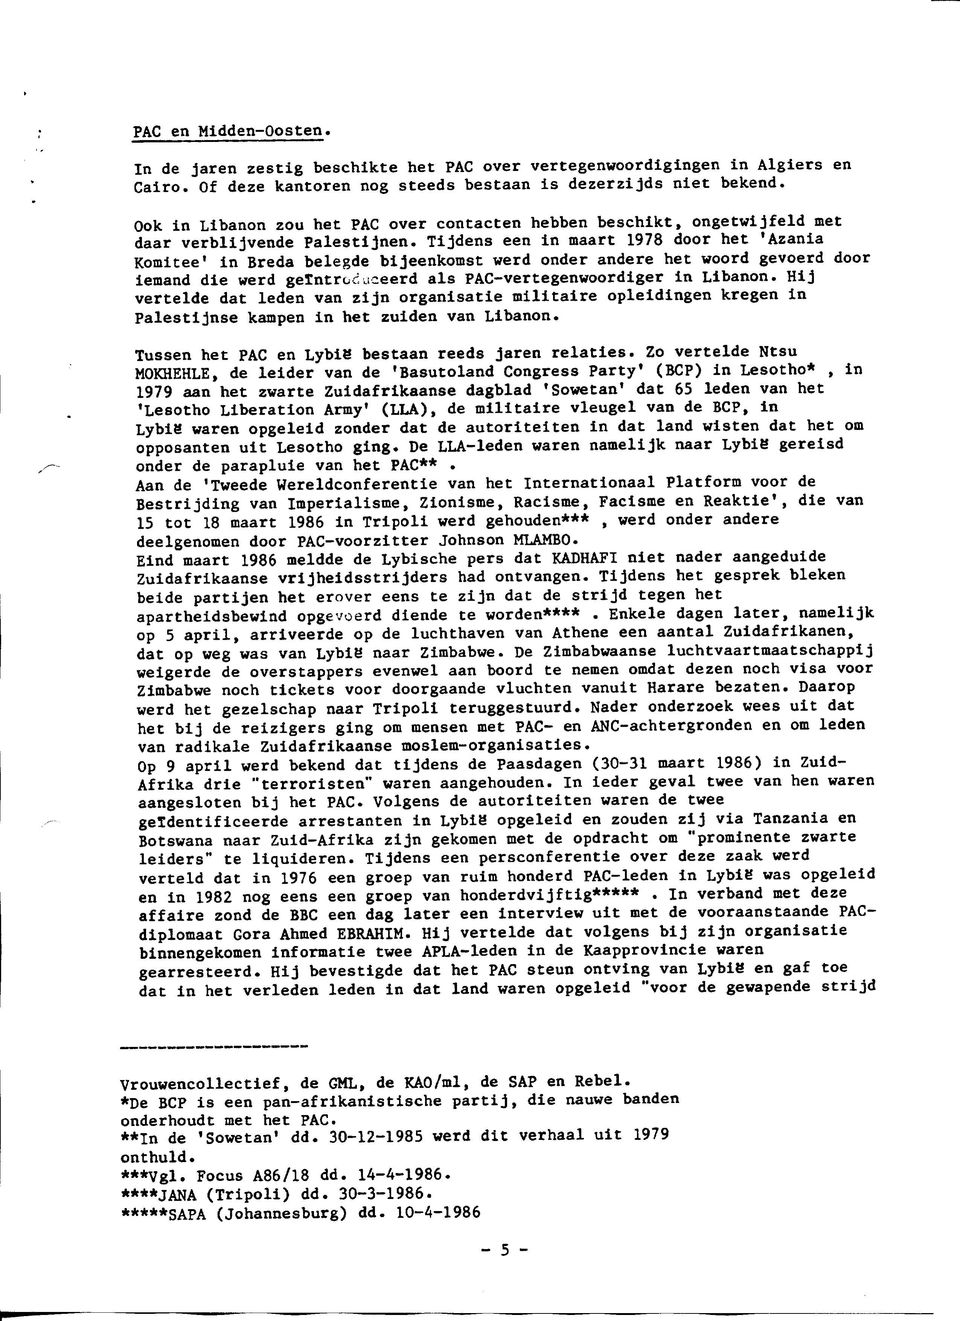 Tijdens een in maart 1978 door het 'Azania Komitee' in Breda belegde bijeenkomst werd onder andere het woord gevoerd door iemand die werd geïntroduceerd als PAC-vertegenwoordiger in Libanon.